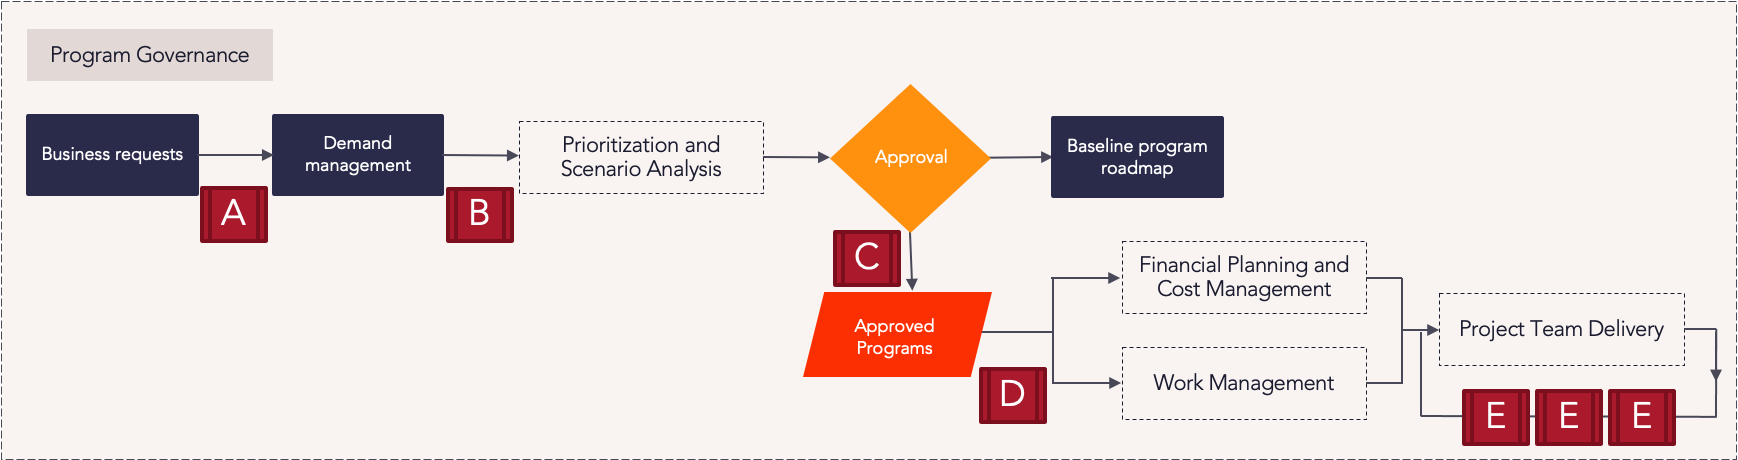 E1 - Program Portfolio Planning - Program Governance Process Flow.png